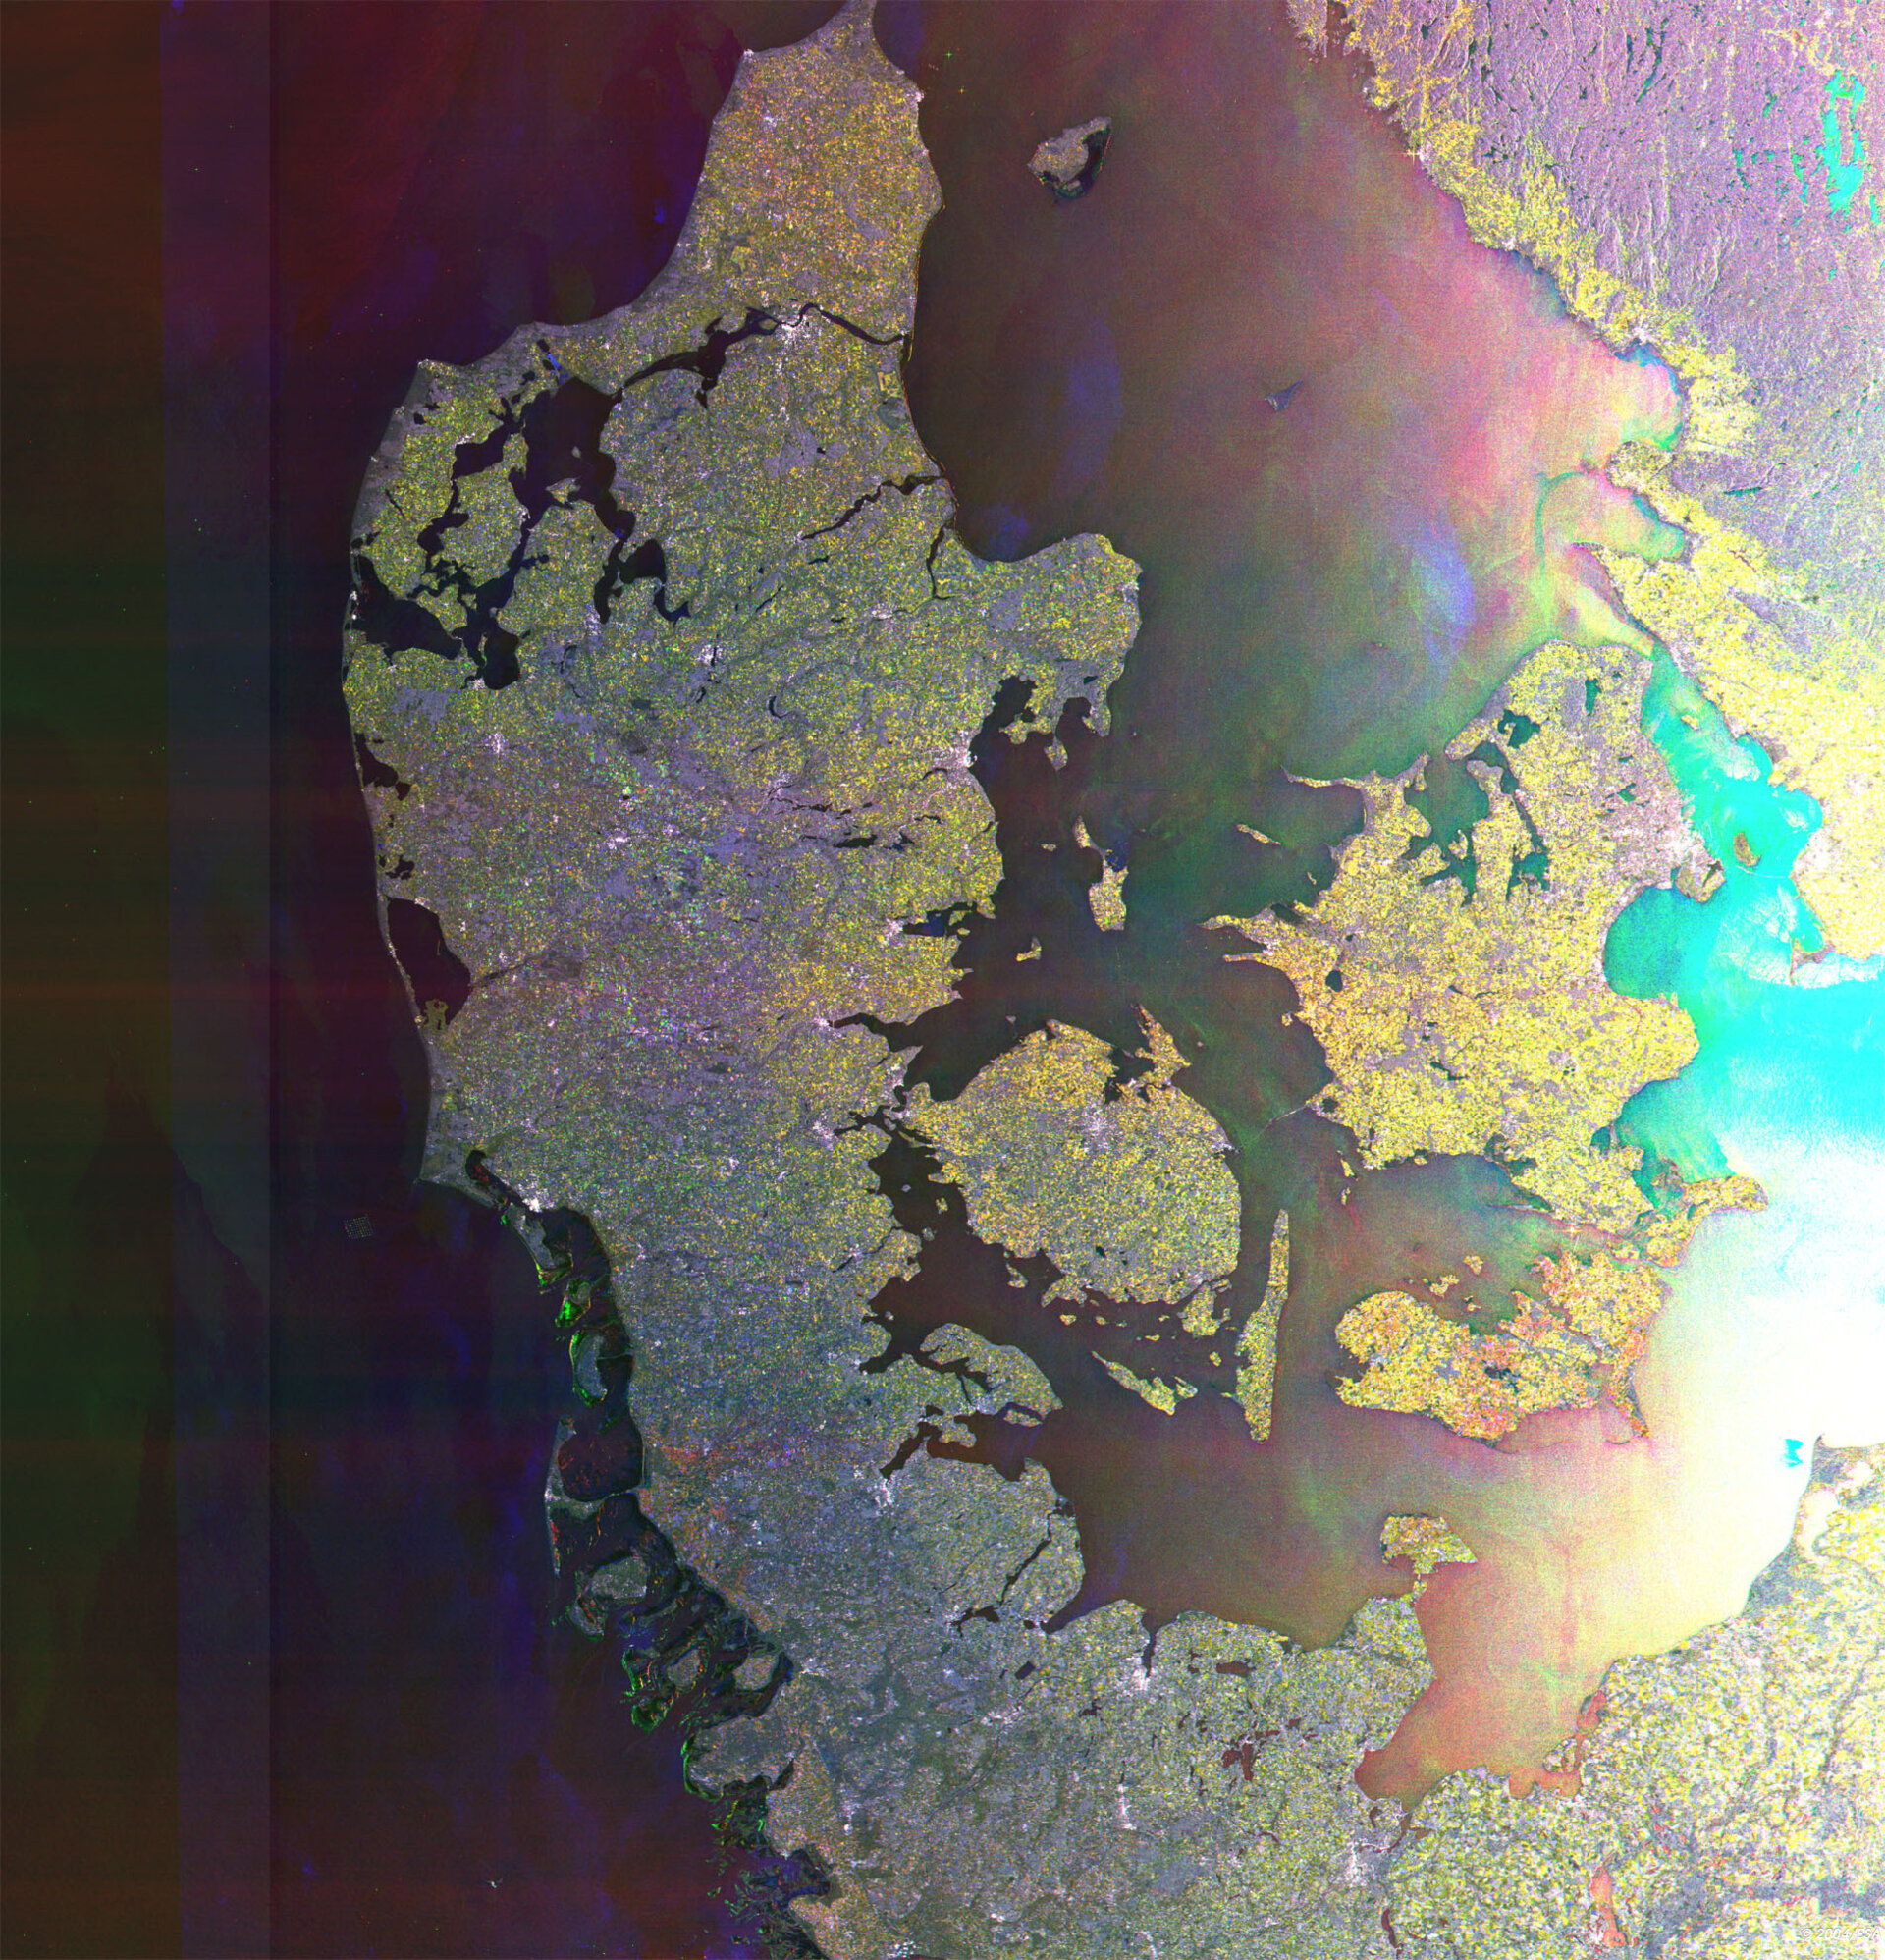 Danmark - her set af ESA's miljøsatellit Envisat - øger engagementet i europæisk rumfart.